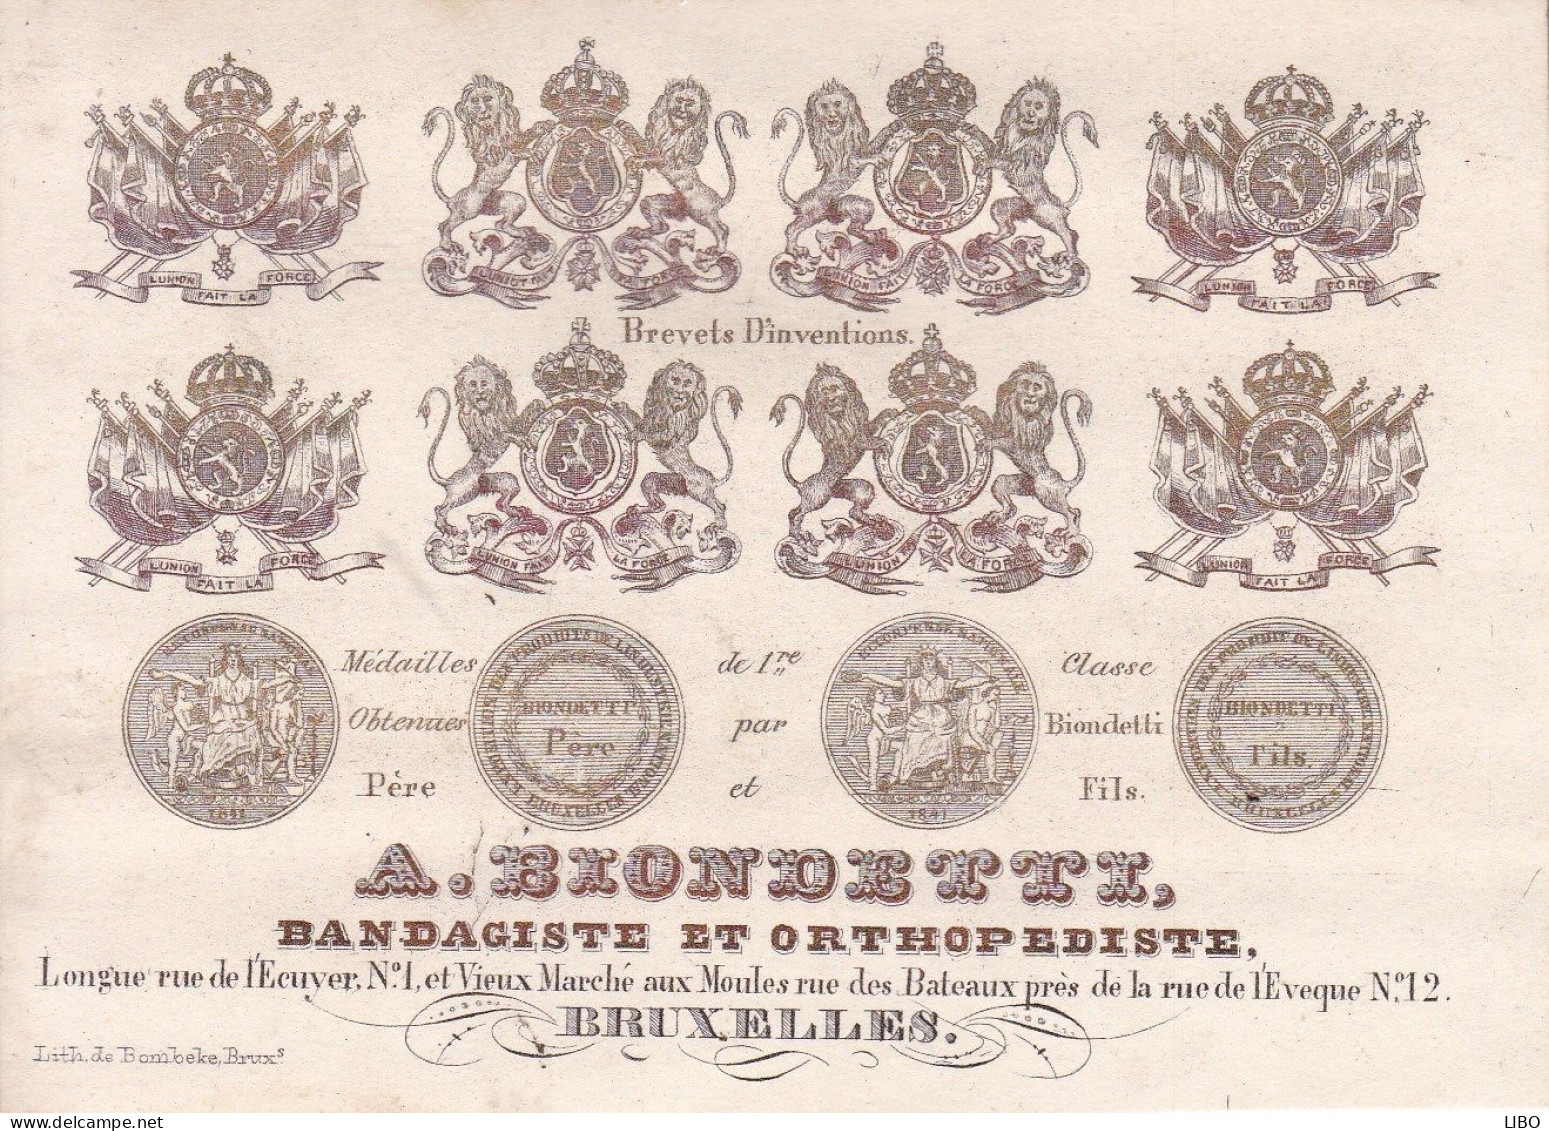 BRUXELLES BLONDETTZ Bandagiste Orthopédiste Vieux Marché Aux Moules Carte Porcelaine Années 1850-1860 - Cartoline Porcellana